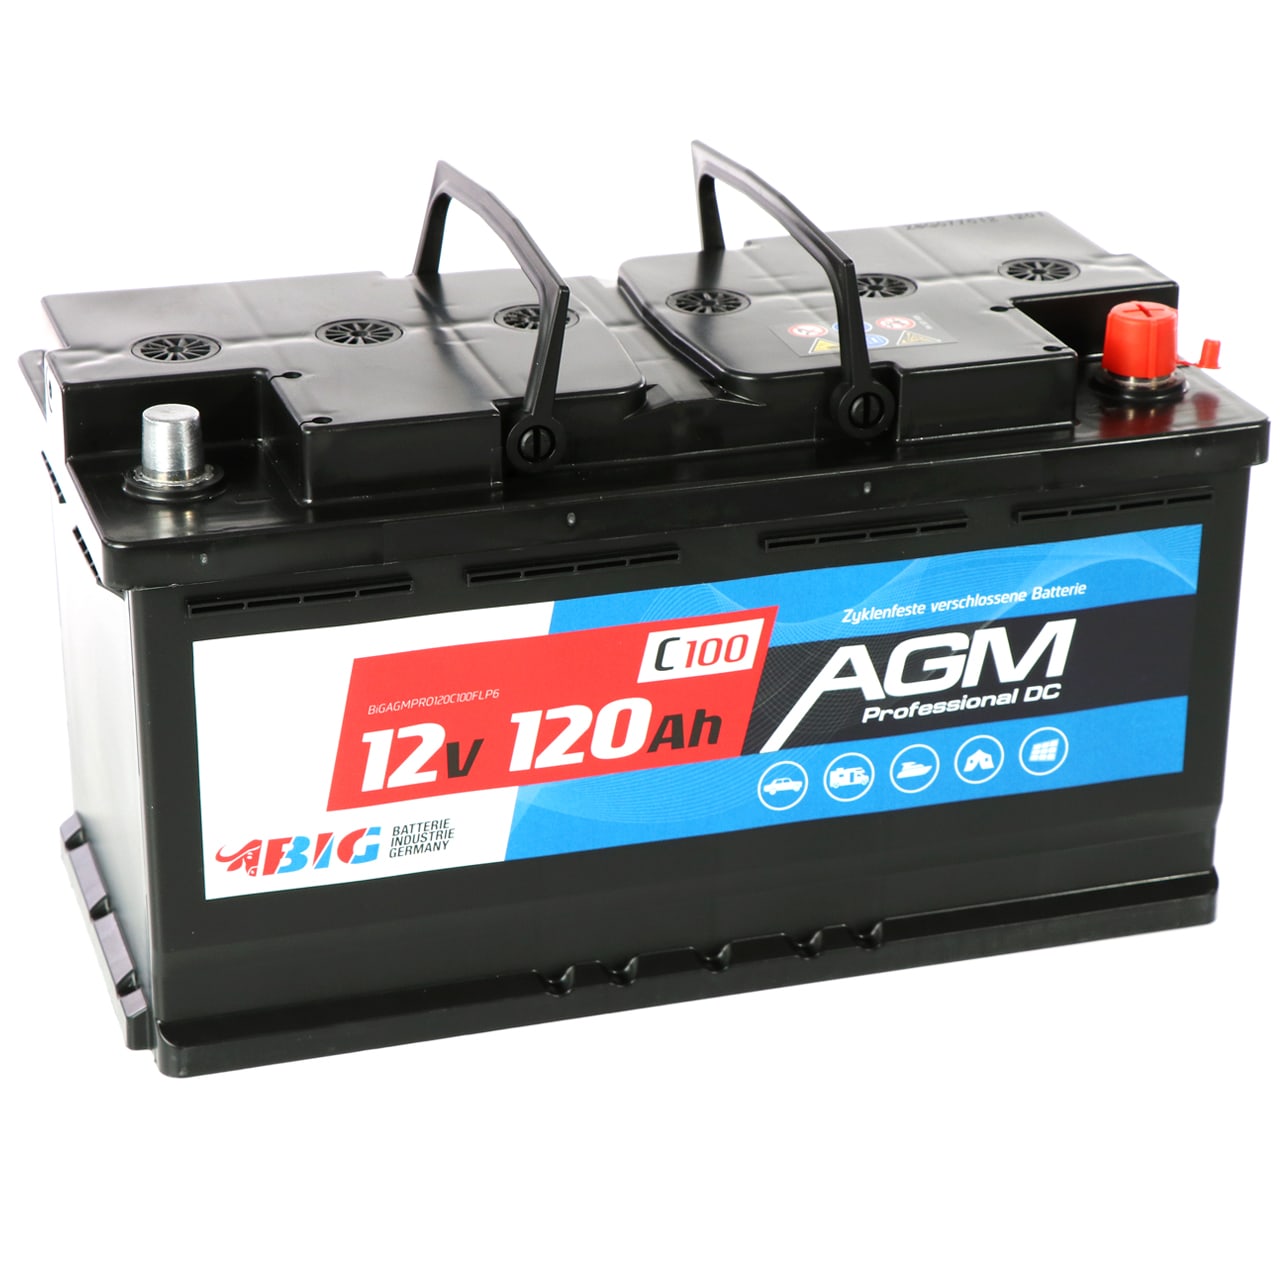 BIG Versorgungsbatterie AGM 12V 120Ah für Freizeit und Hobby